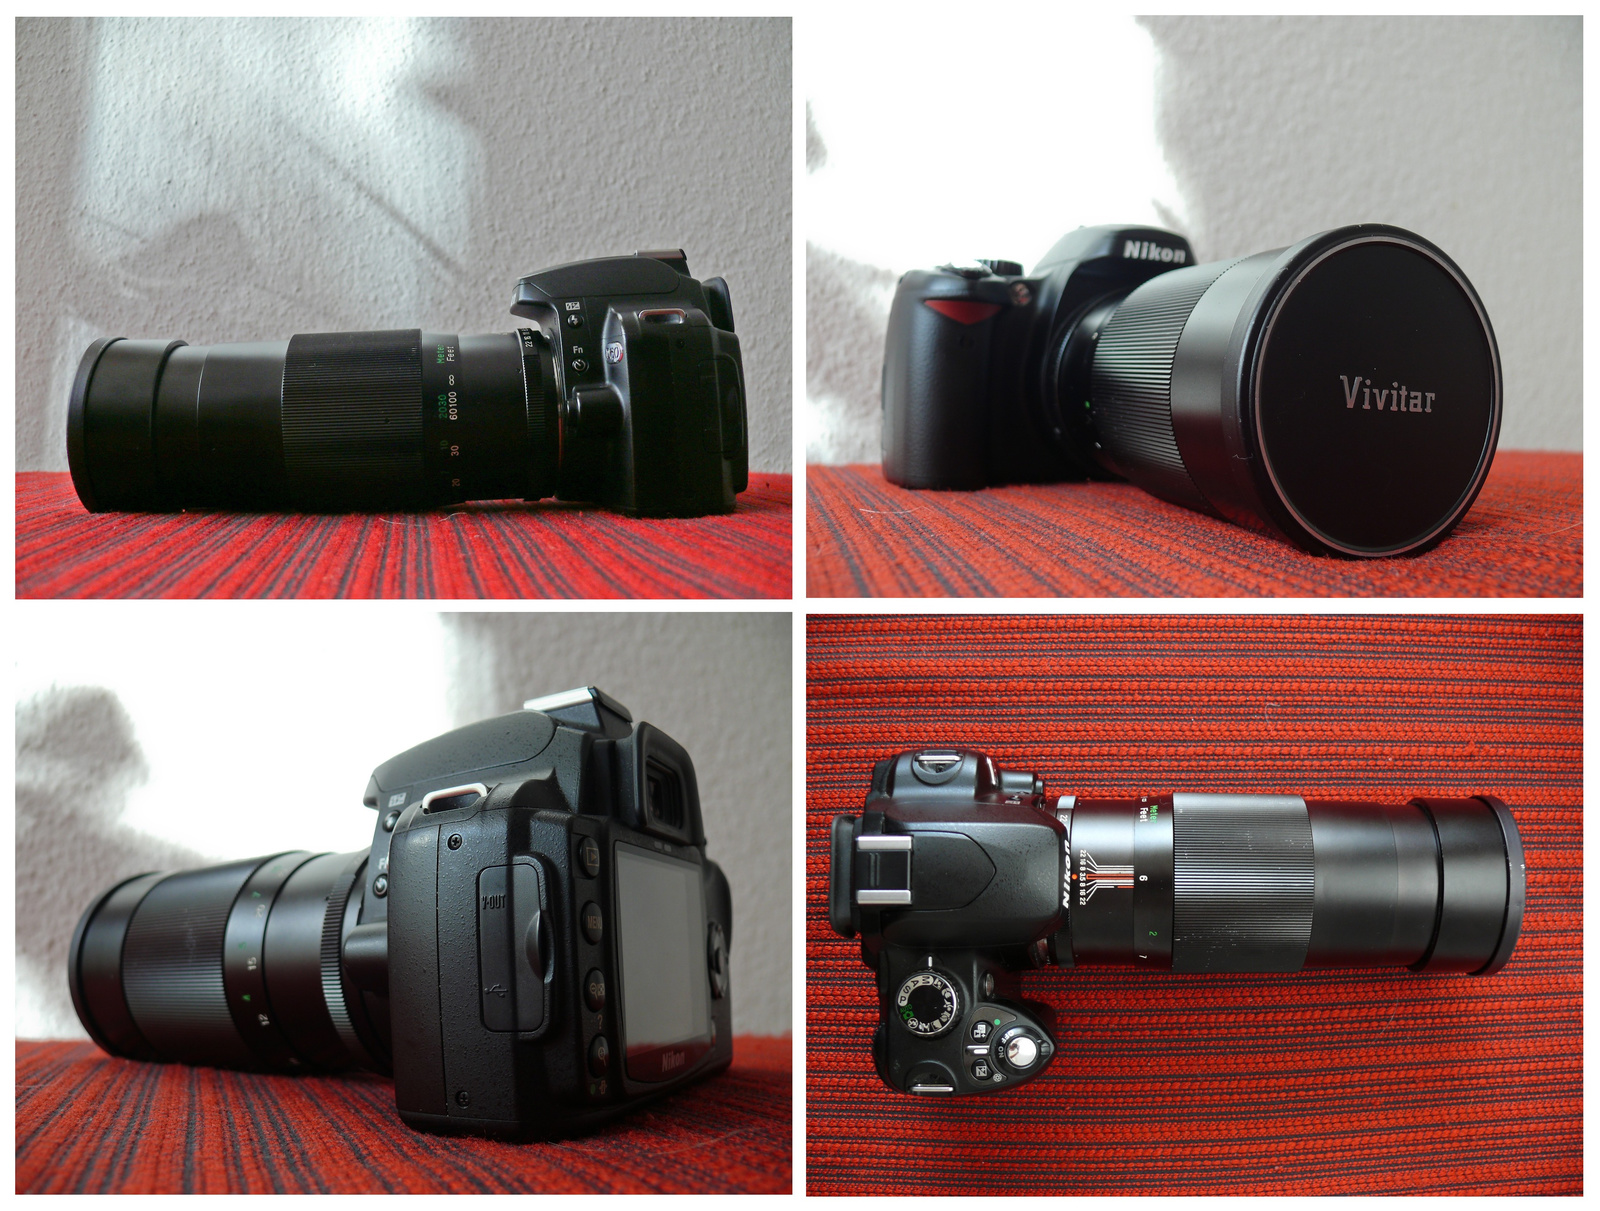 Nikon D60 + Vivitar 200mm f3.5